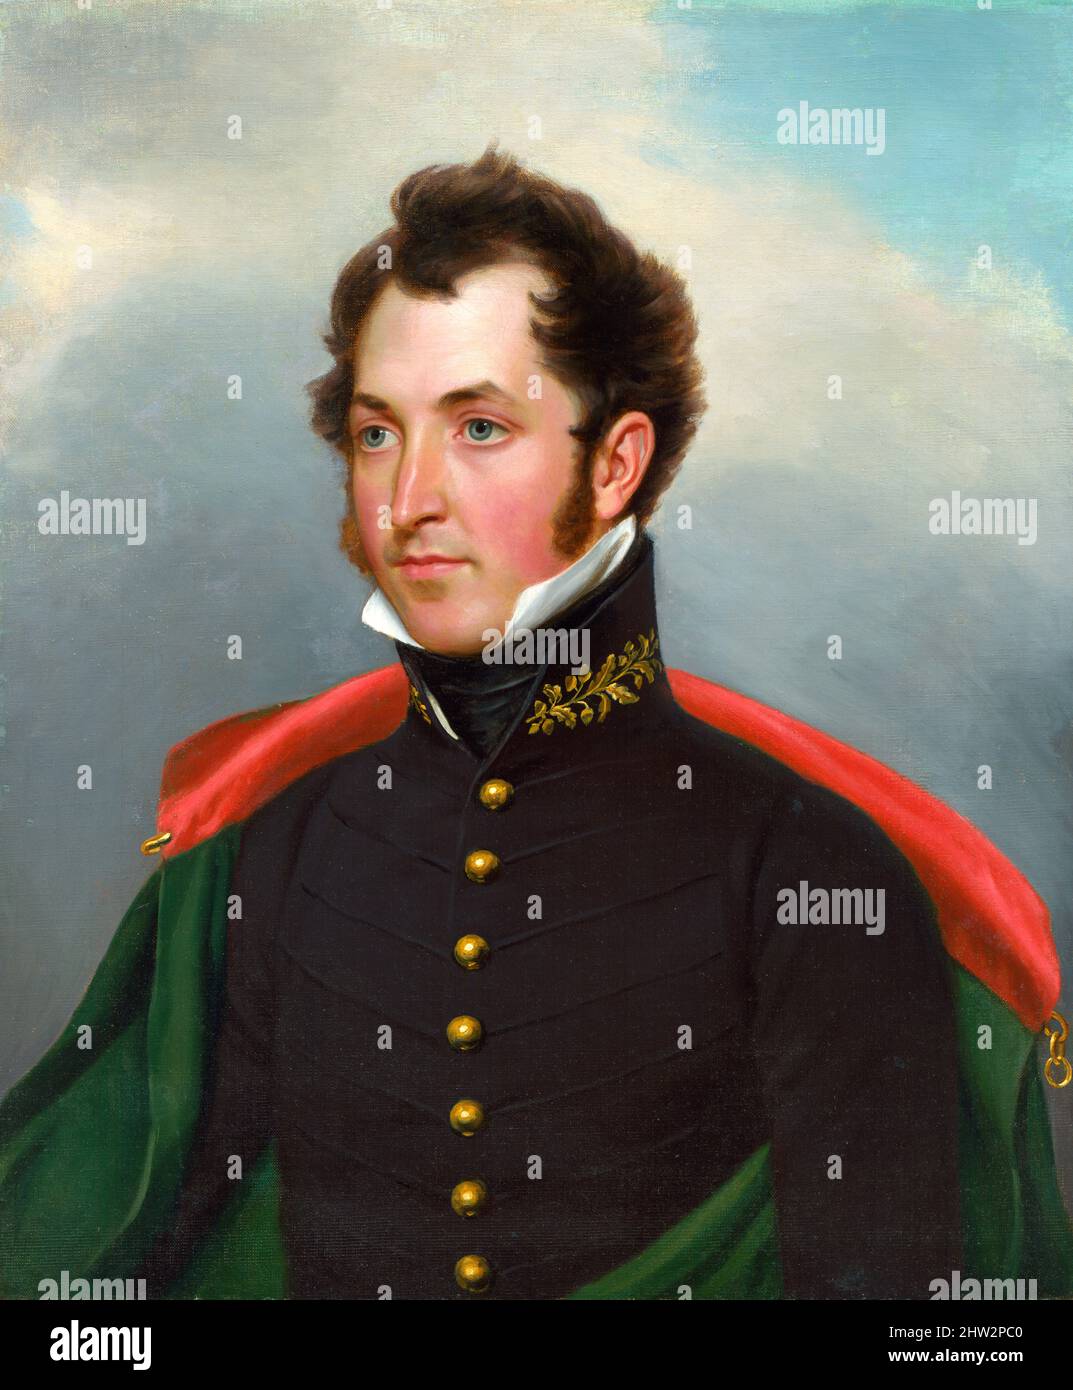 Portrait de l'officier d'artillerie américain, le major Samuel B. Ringgold (1796-1846) par John Vanderlyn, huile sur toile, c. 1825 Banque D'Images